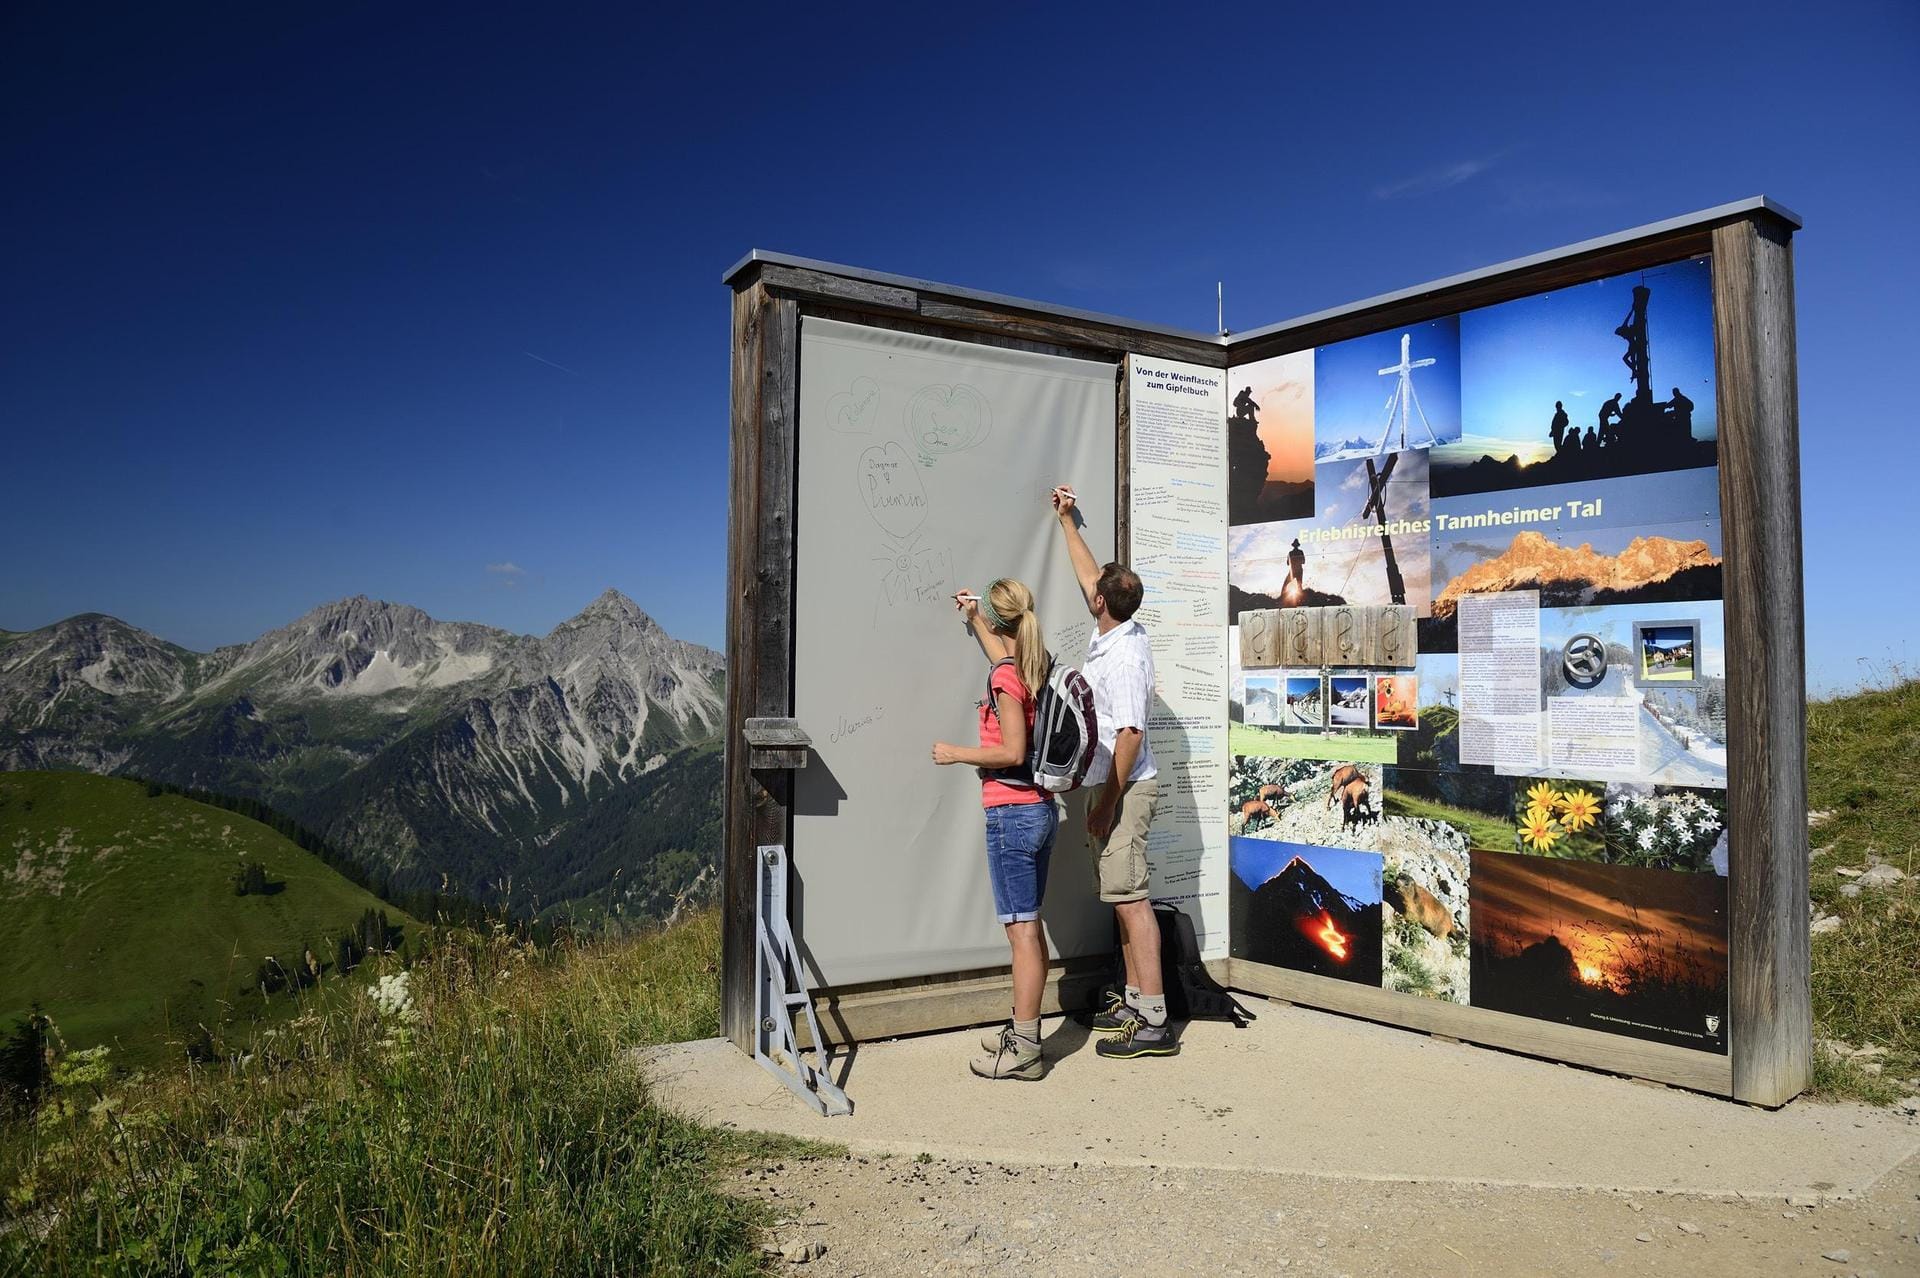 Das größte Gipfelbuch der Alpen dagegen befindet sich auf dem 1862 Meter hohen Neunerköpfle in den Allgäuer Alpen, ein paar Meter neben dem Gipfelkreuz.